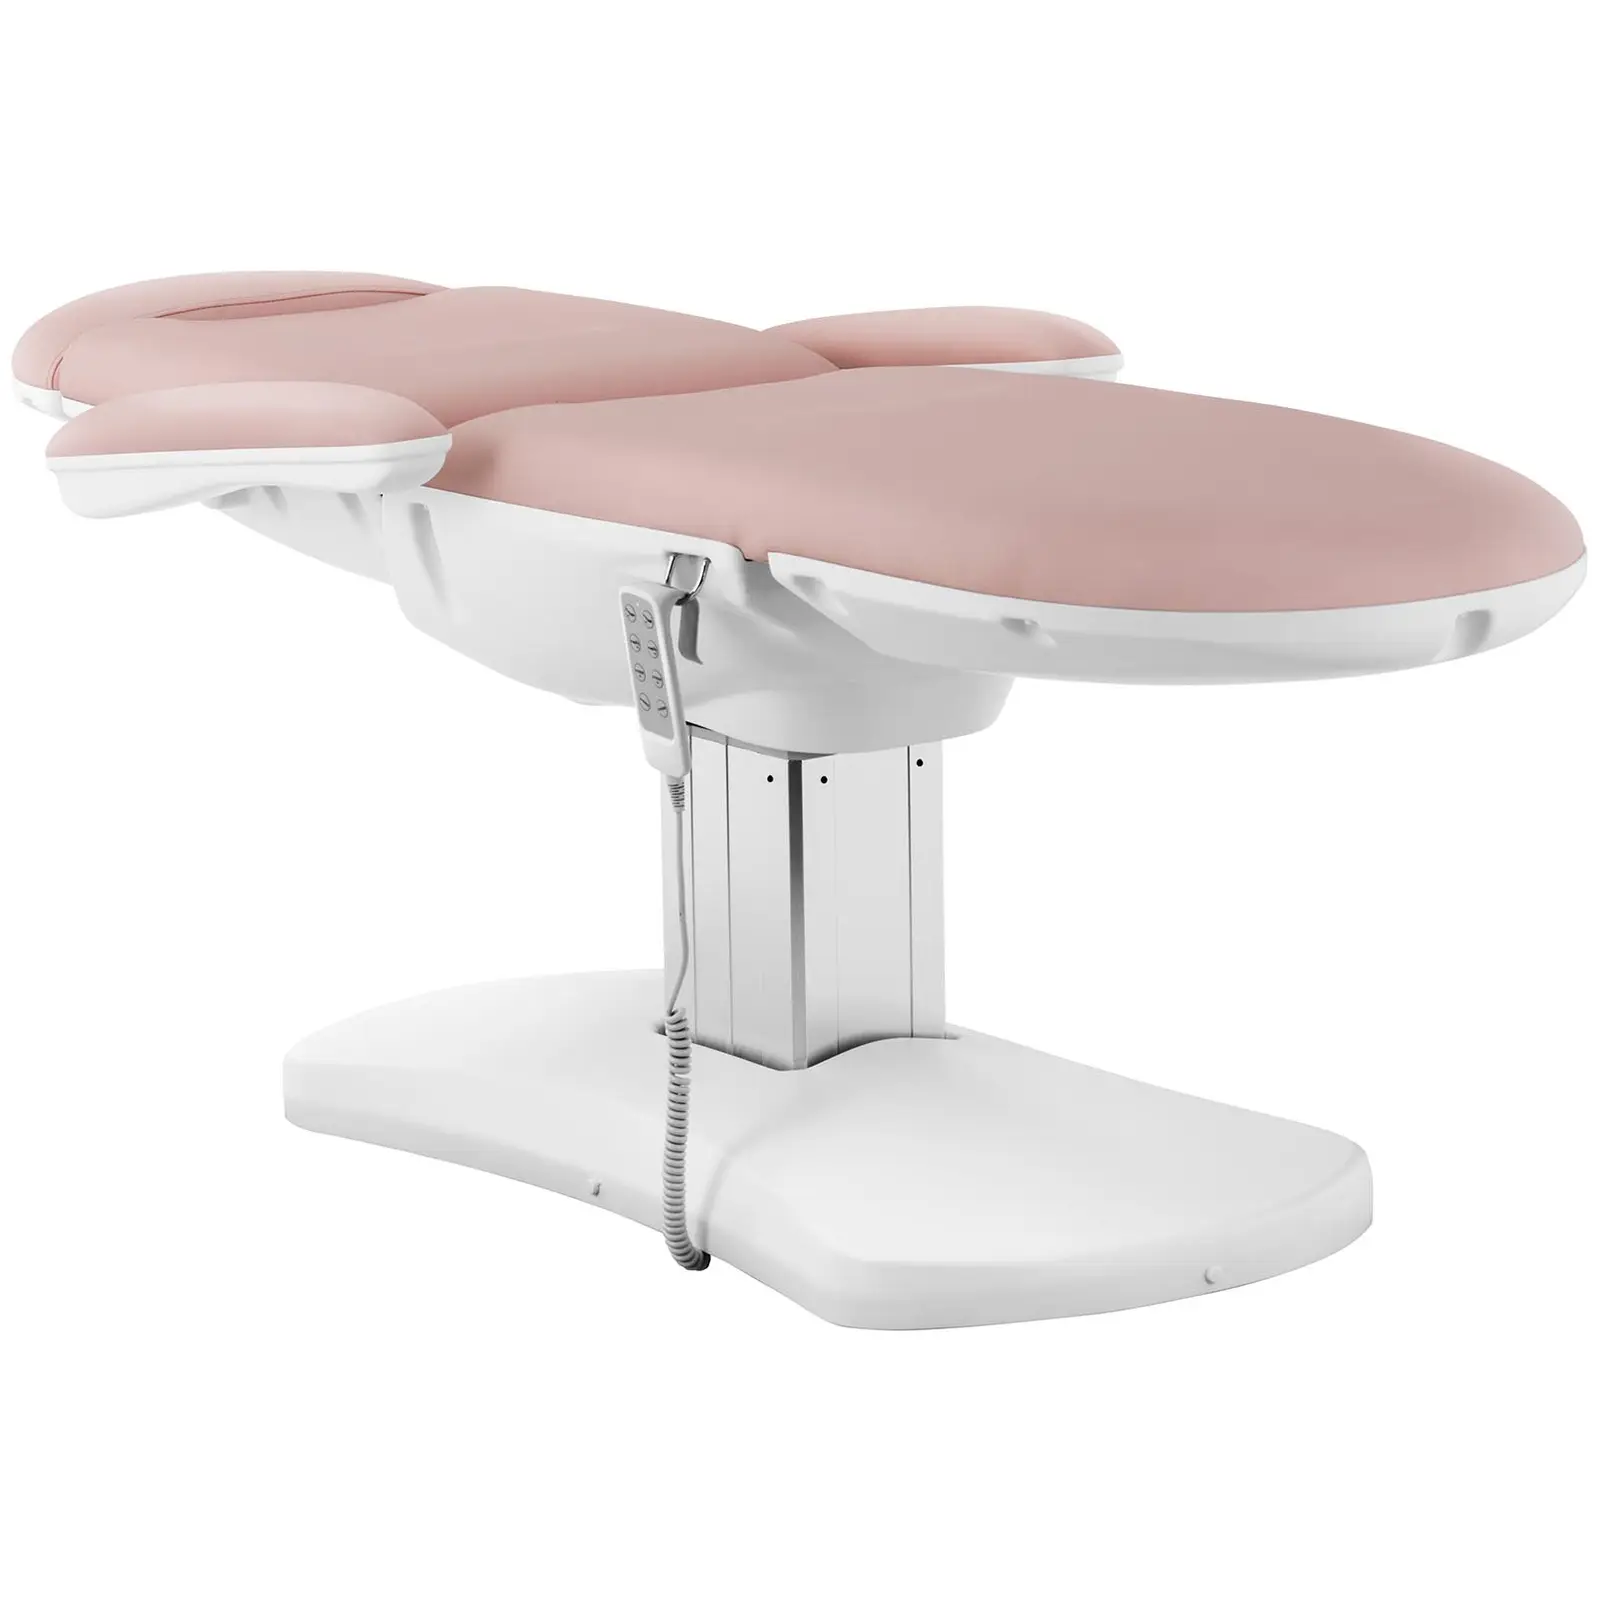 Outlet Fotel kosmetyczny - 350 W - 150 kg - różowy, biały